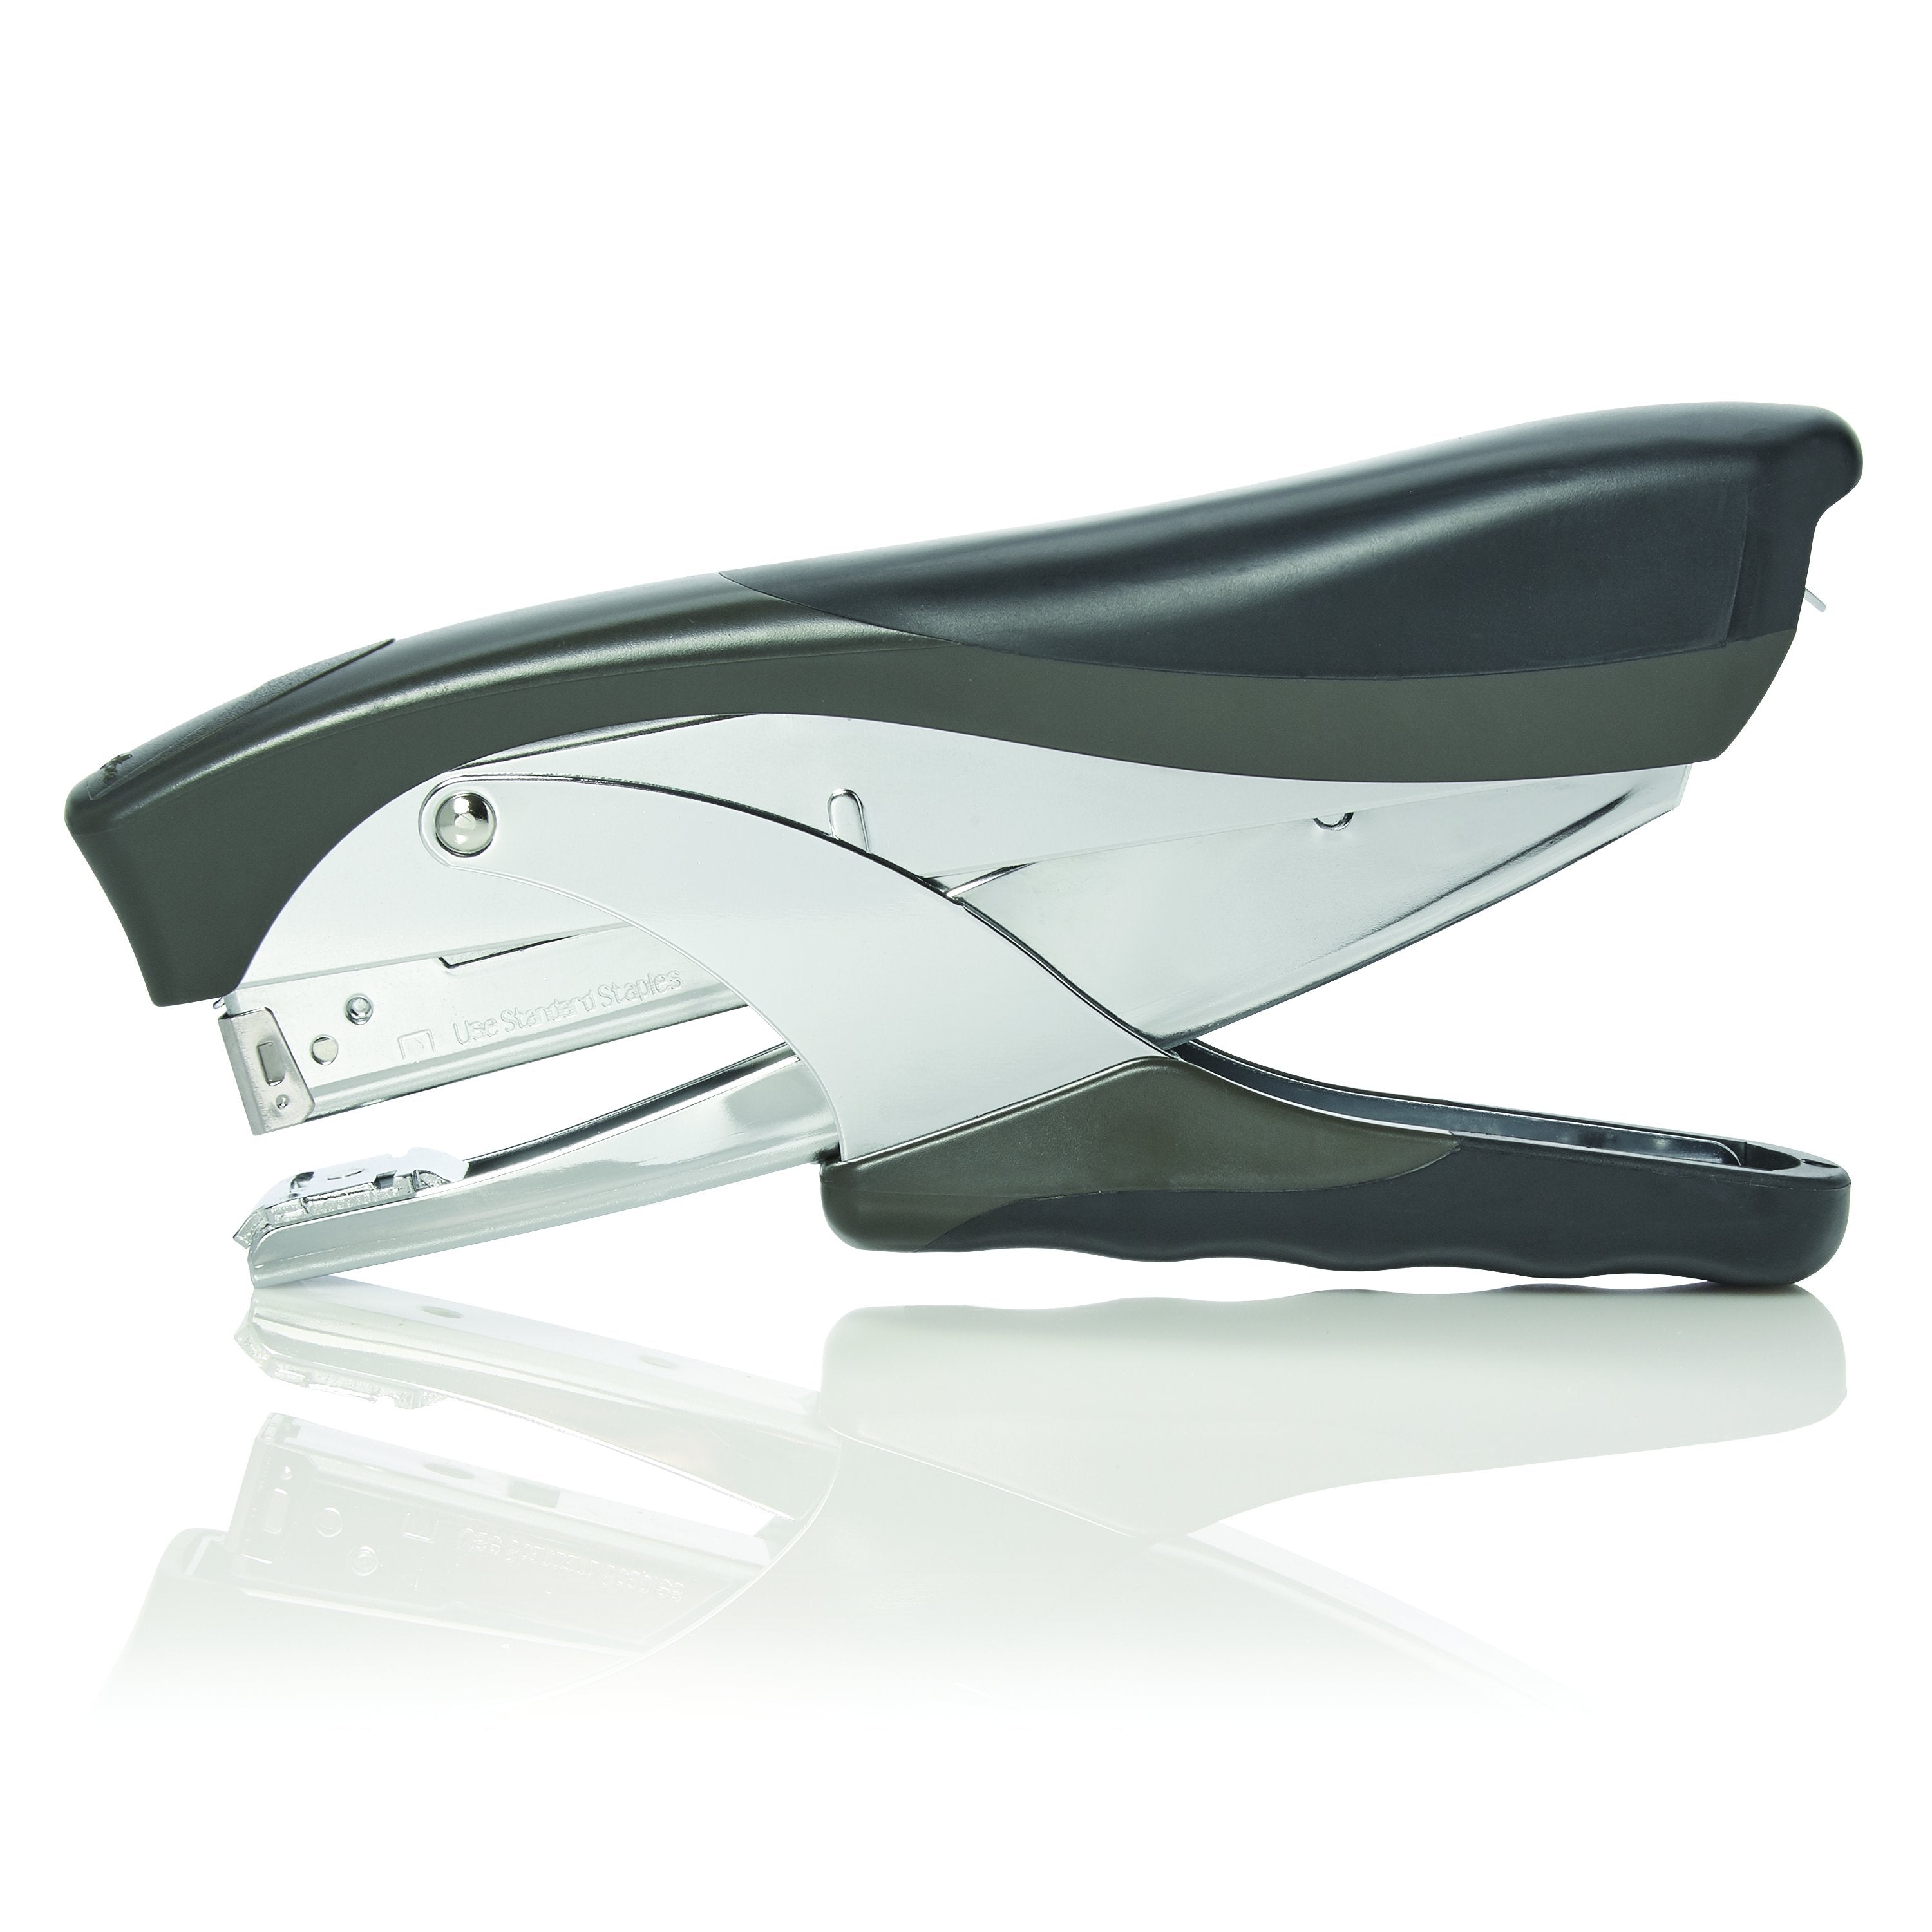 Swingline® Premium Hand Stapler, Model 20BK, Desktop Stapler